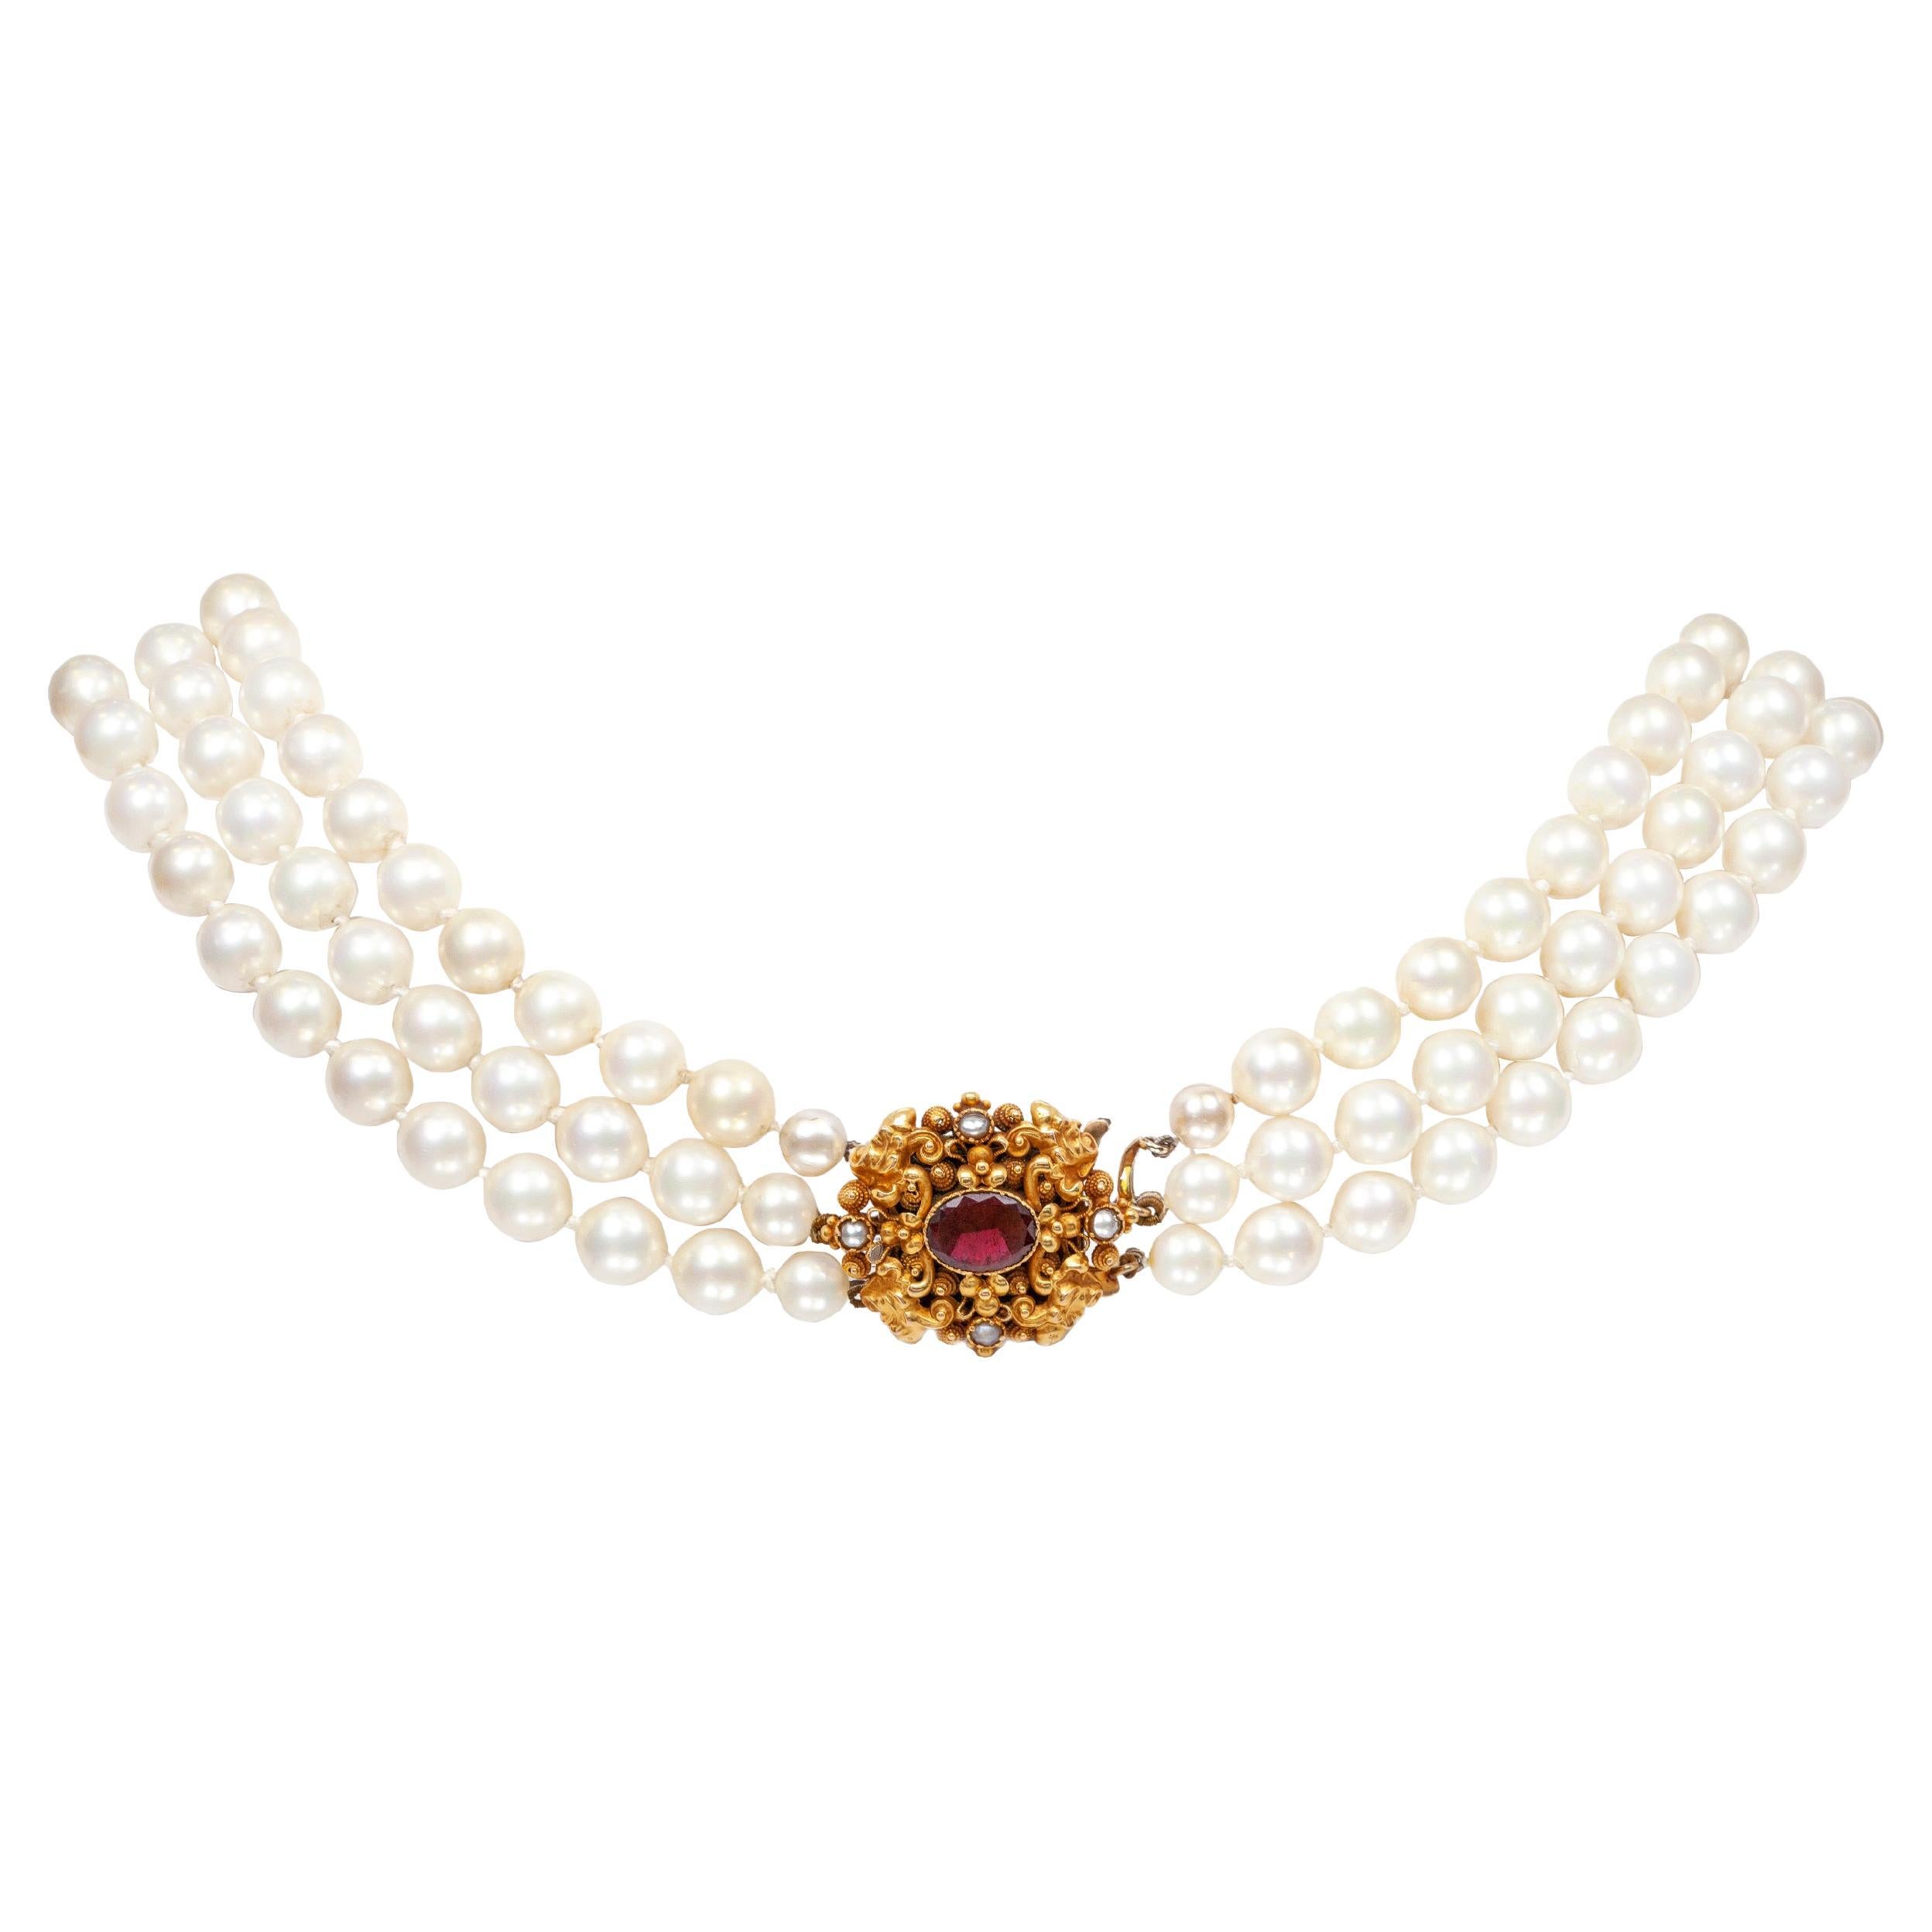 Collier de perles de culture à trois rangées avec fermoir en or jaune, grenat et perles naturelles